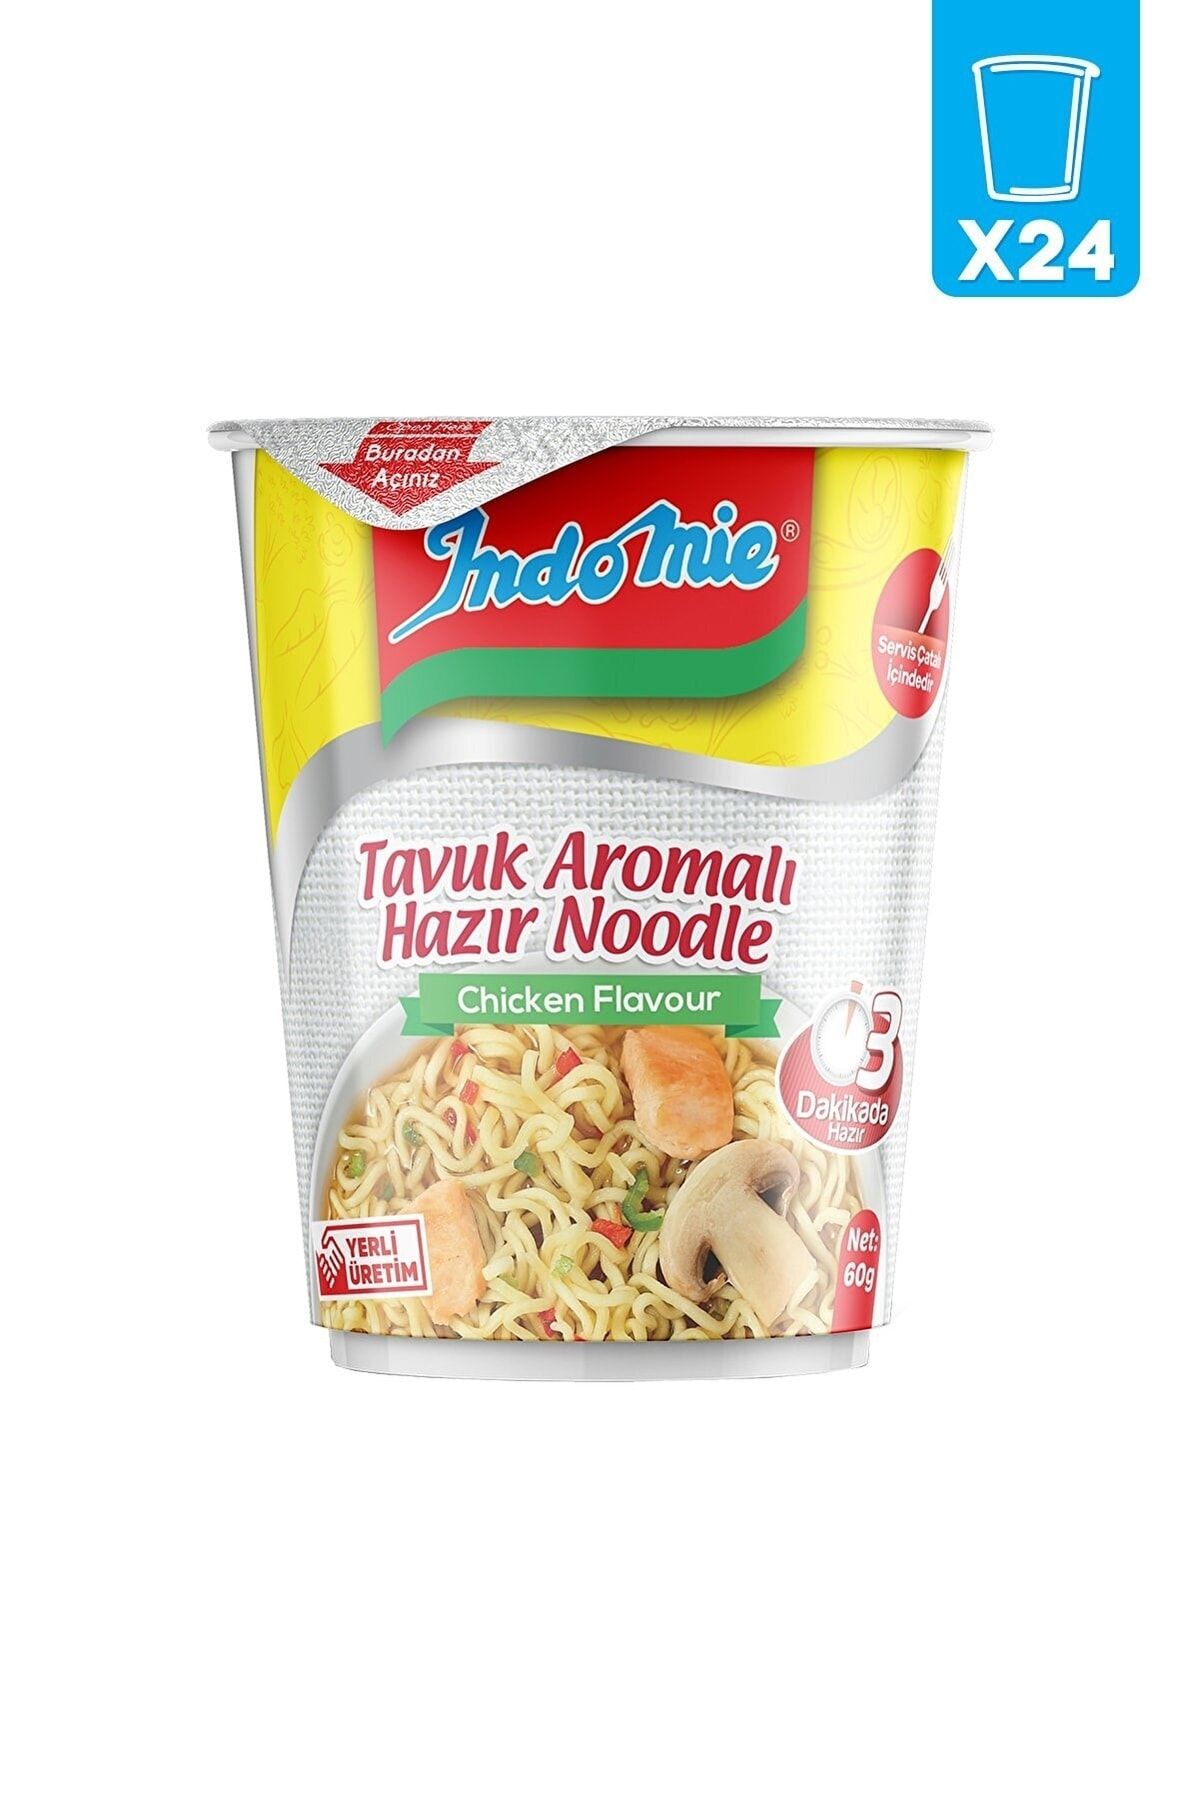 Indomie Tavuk Aromalı Hazır Noodle 24 Lü Bardak Orjinal Paket